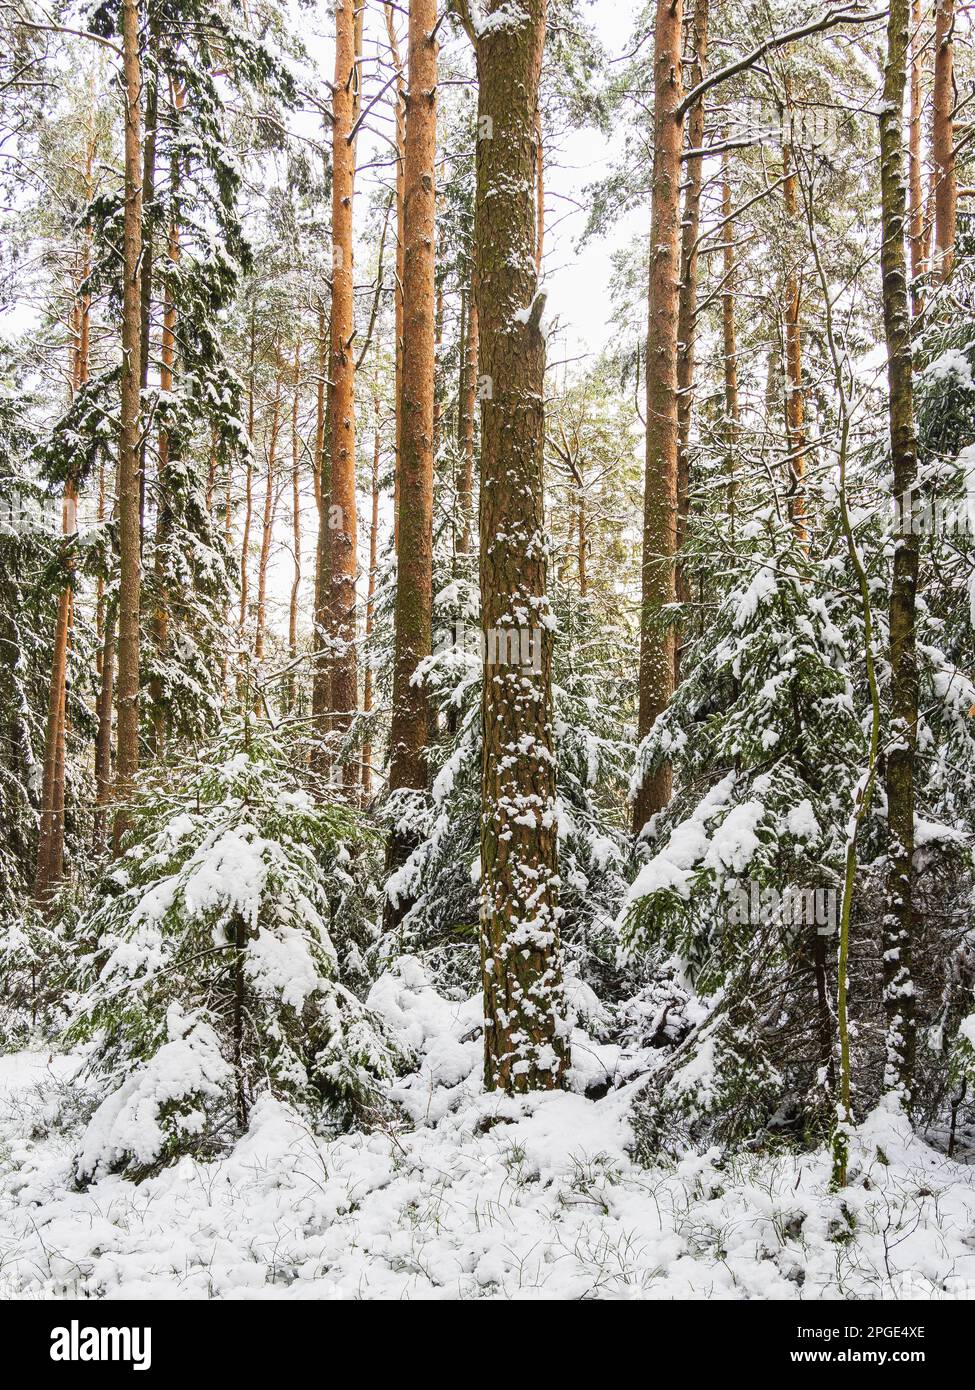 Eine ruhige und winterliche Szene mit schneebedeckten Kiefern in einem nordischen Wald, die eine Umgebung von natürlicher Schönheit schafft. Stockfoto